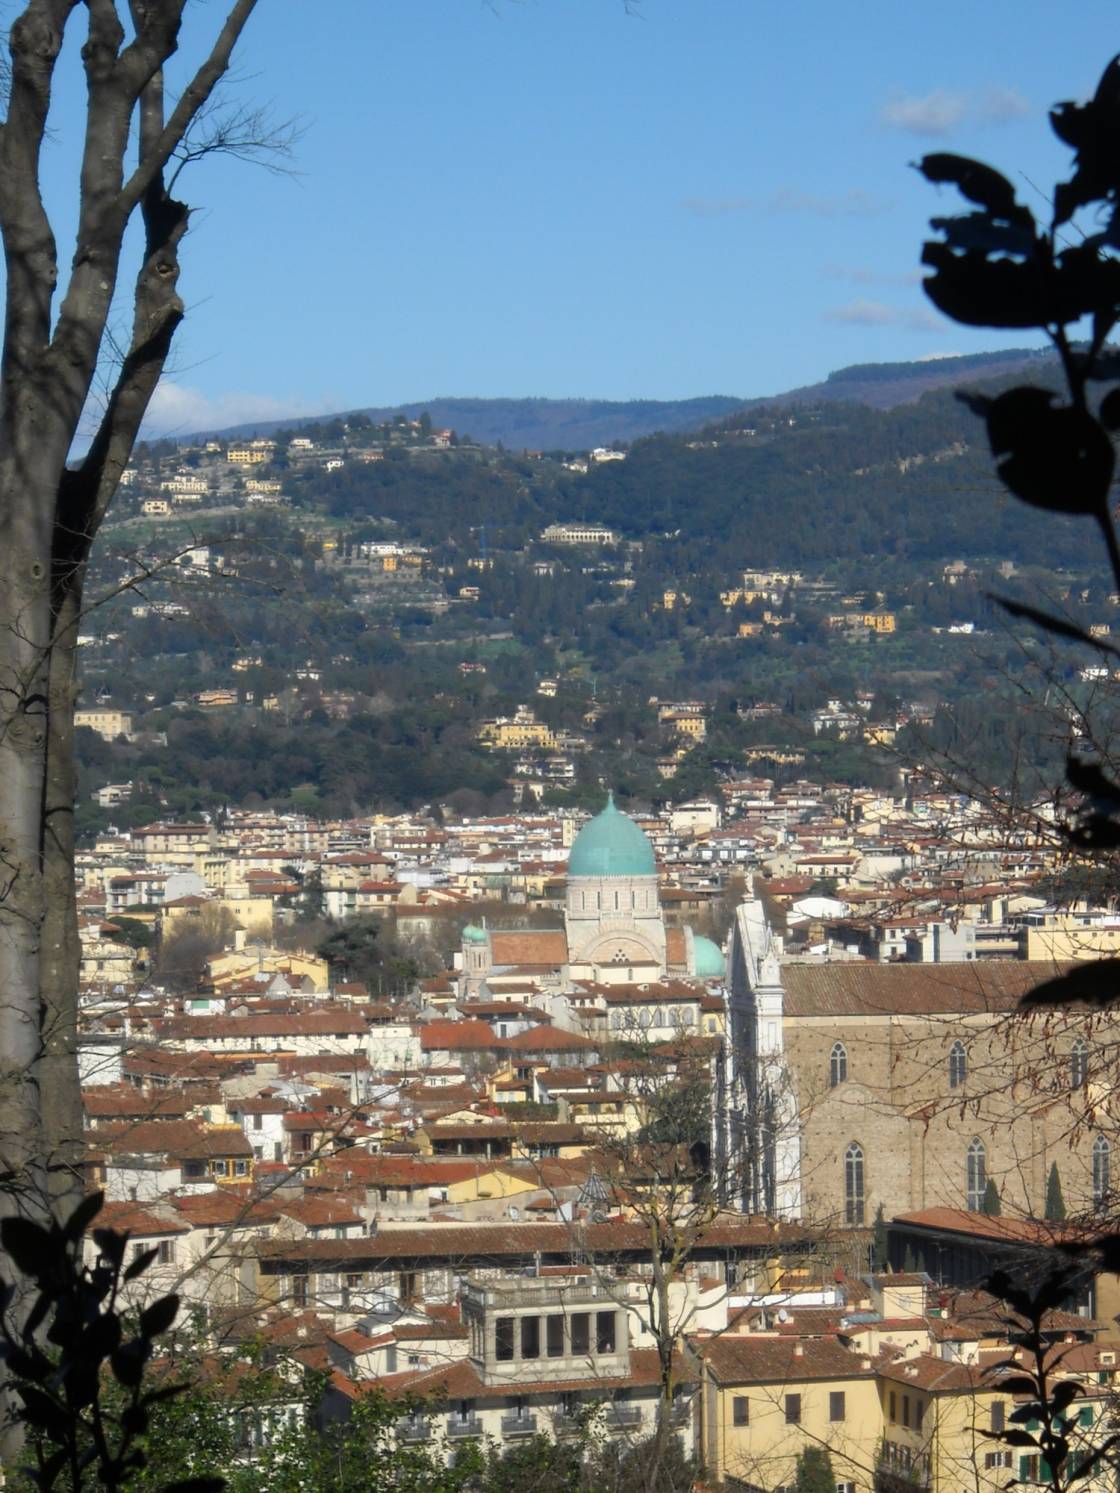 Giardino Bardini - panoramic view of Florence